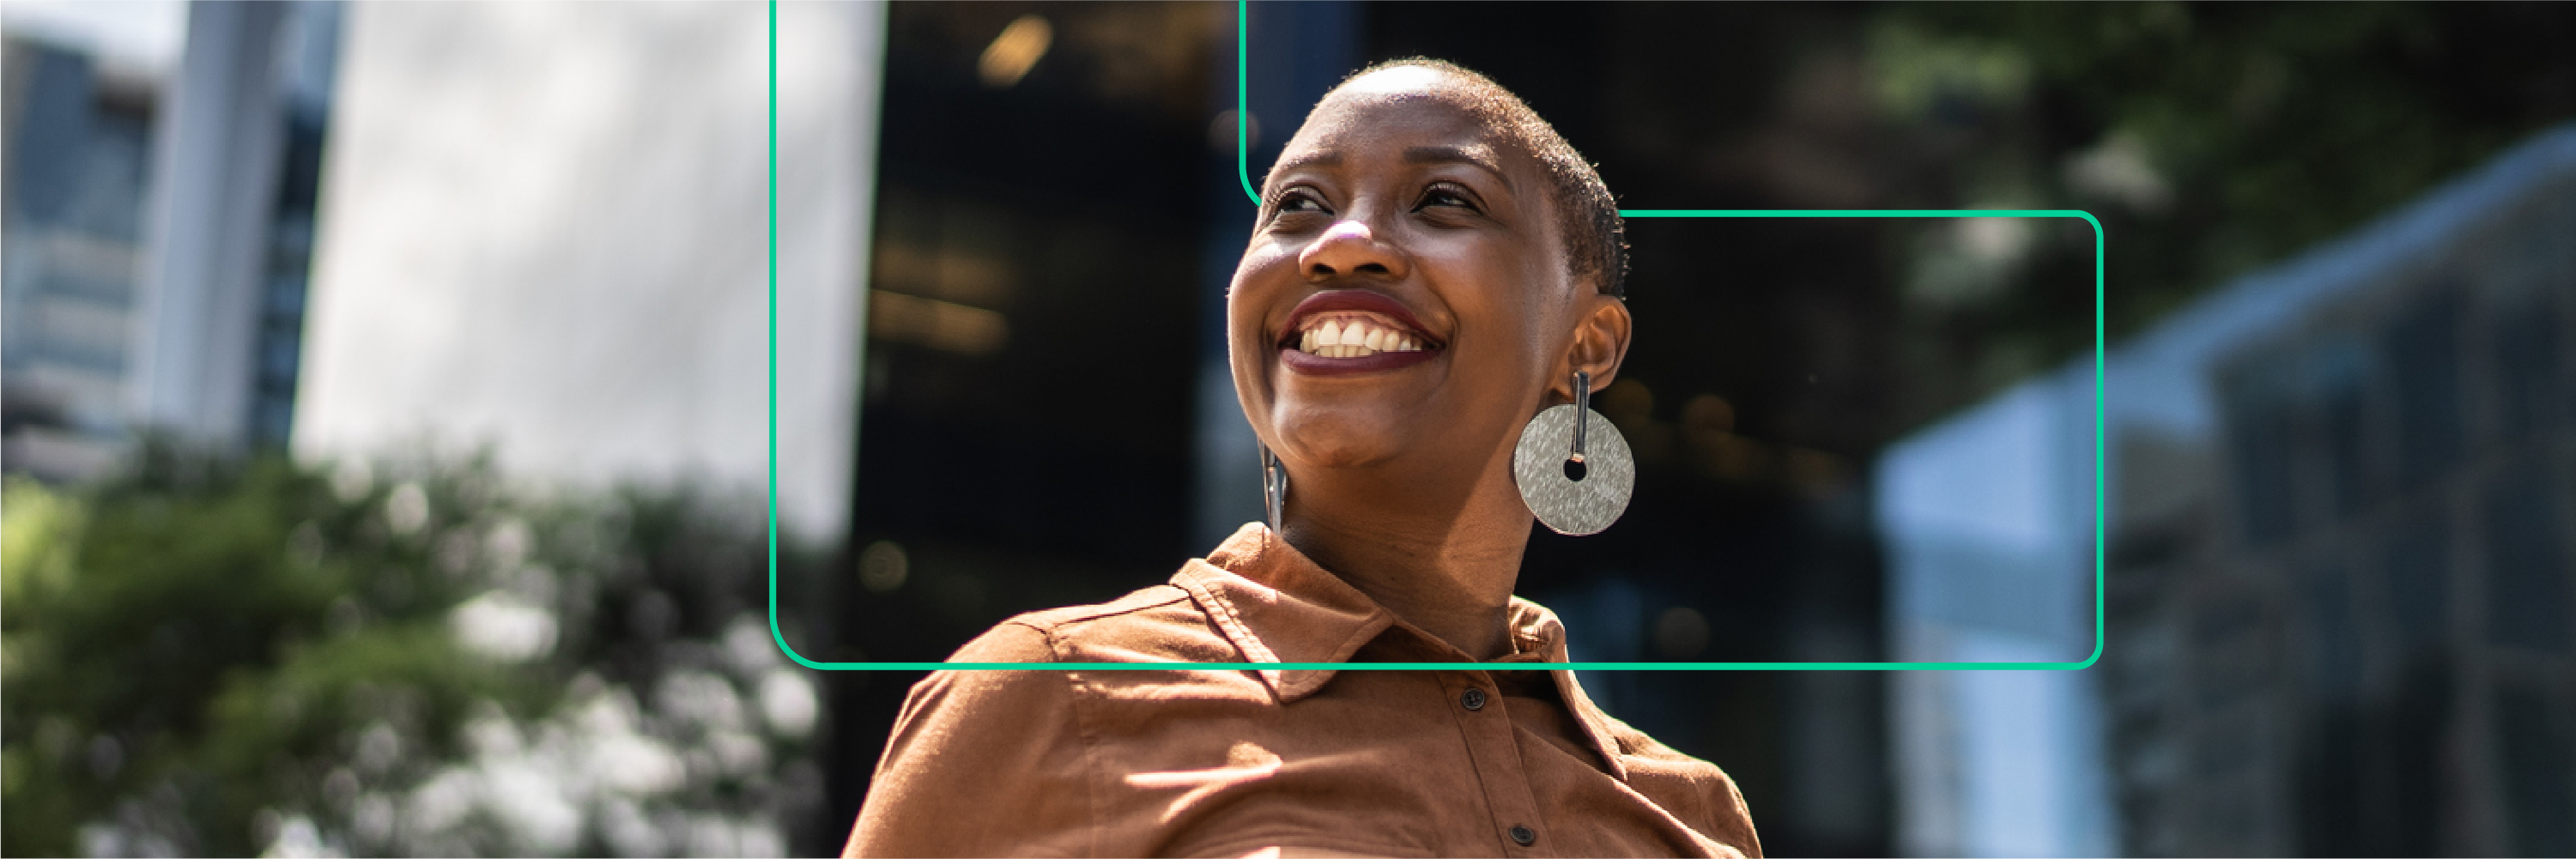 一位黑人女性在看太阳时微笑的照片。横幅中还包括一个大括号，这个符号通常与编程相关，Women Techmaker 使用以下大括号让女性能够突破预期、迎接新事物，从而拓展规范和重塑整个行业。